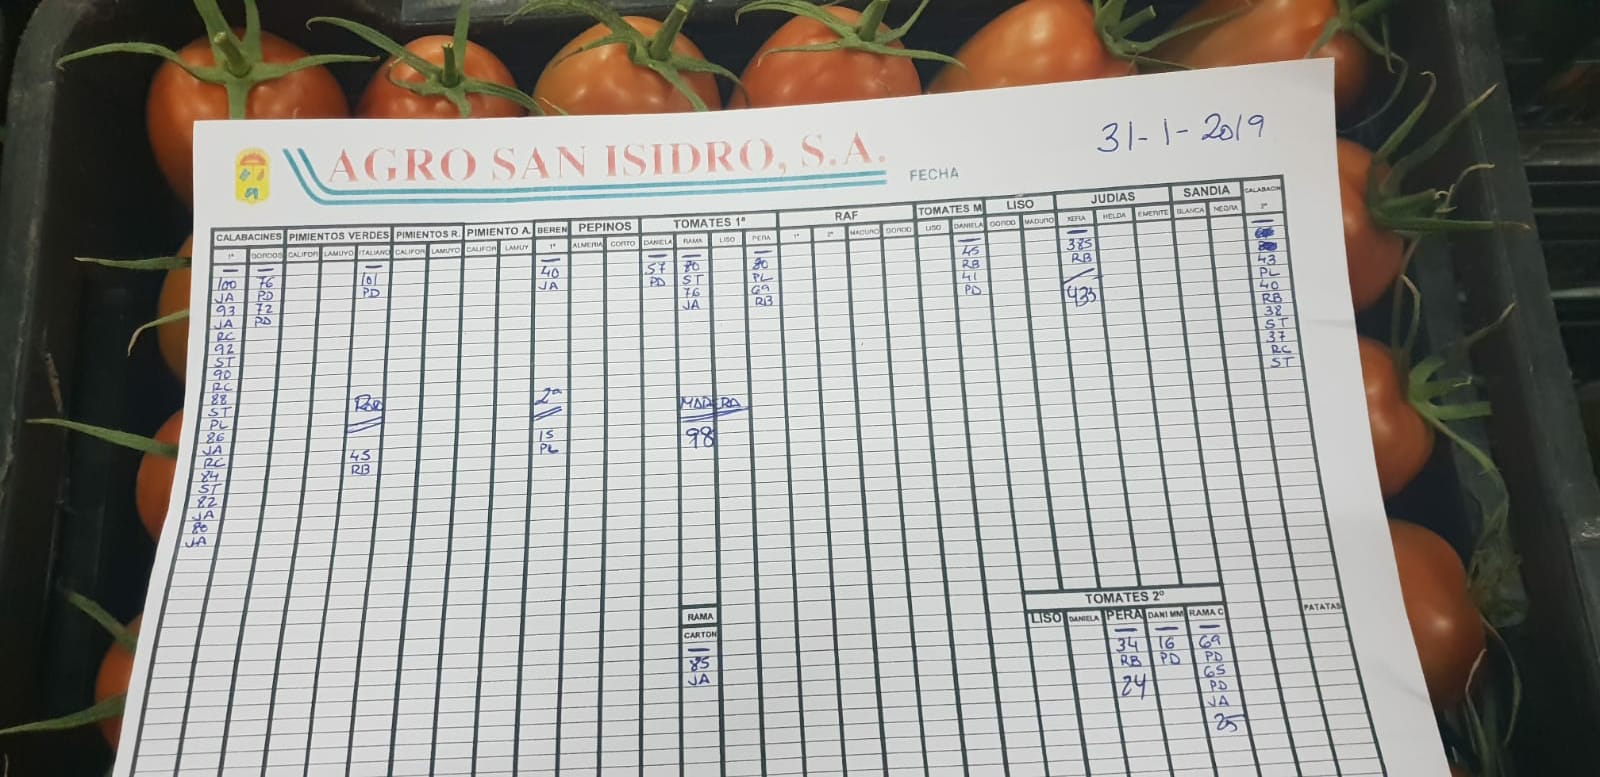 Subasta hortofrutícola Agro San Isidro 31 de Enero 2019